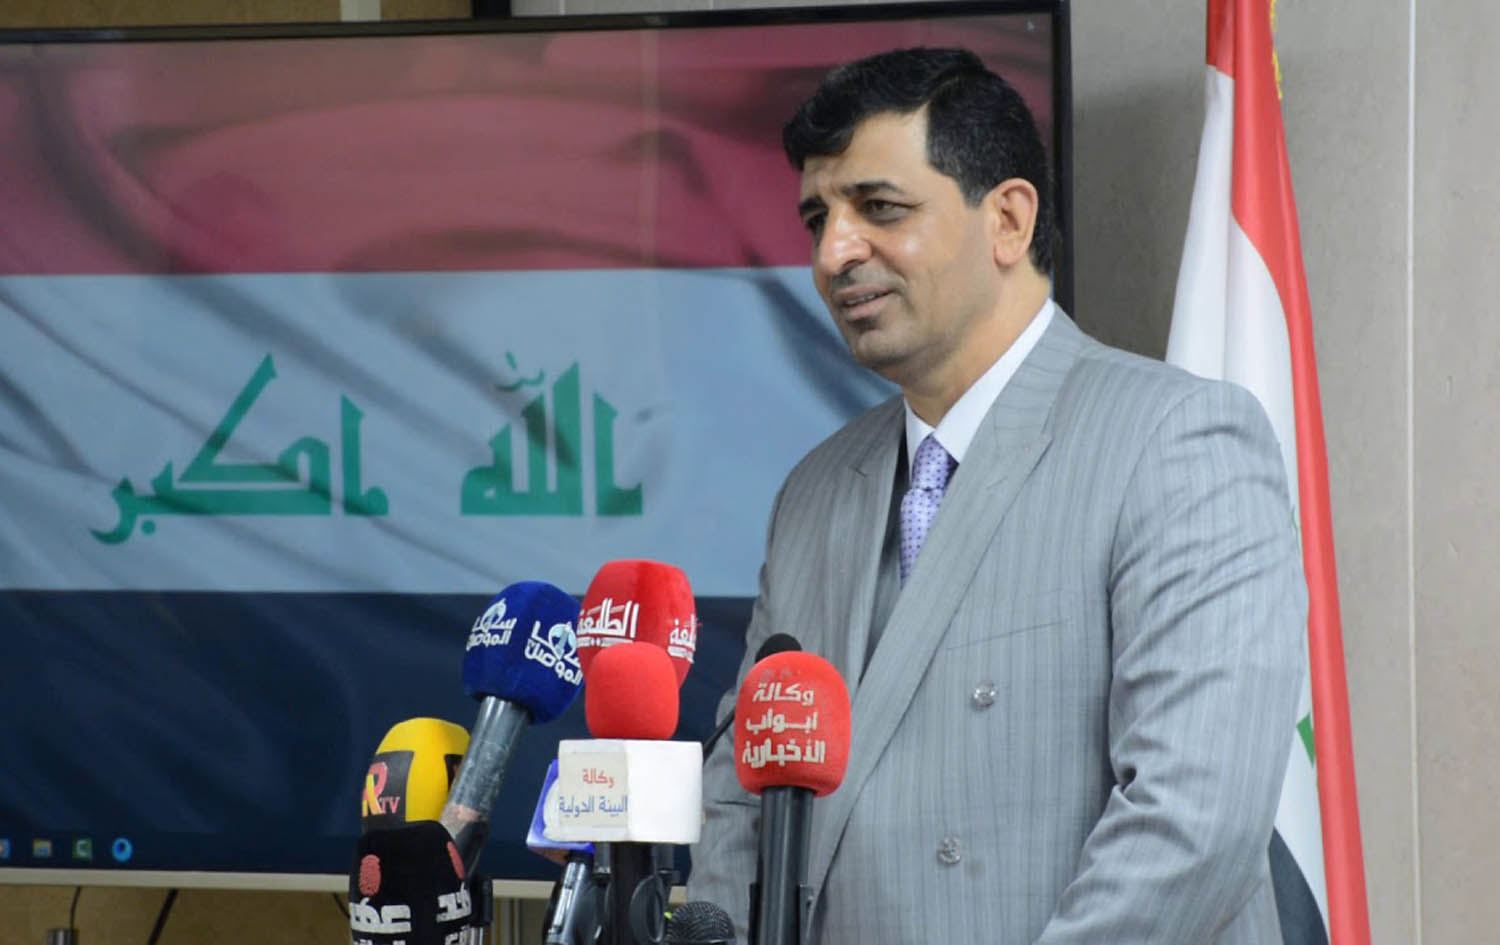 ارتفاع سعر صرف الدولار يدفع بغداد لإلغاء مشروع "مهم" للمصابين بكورونا